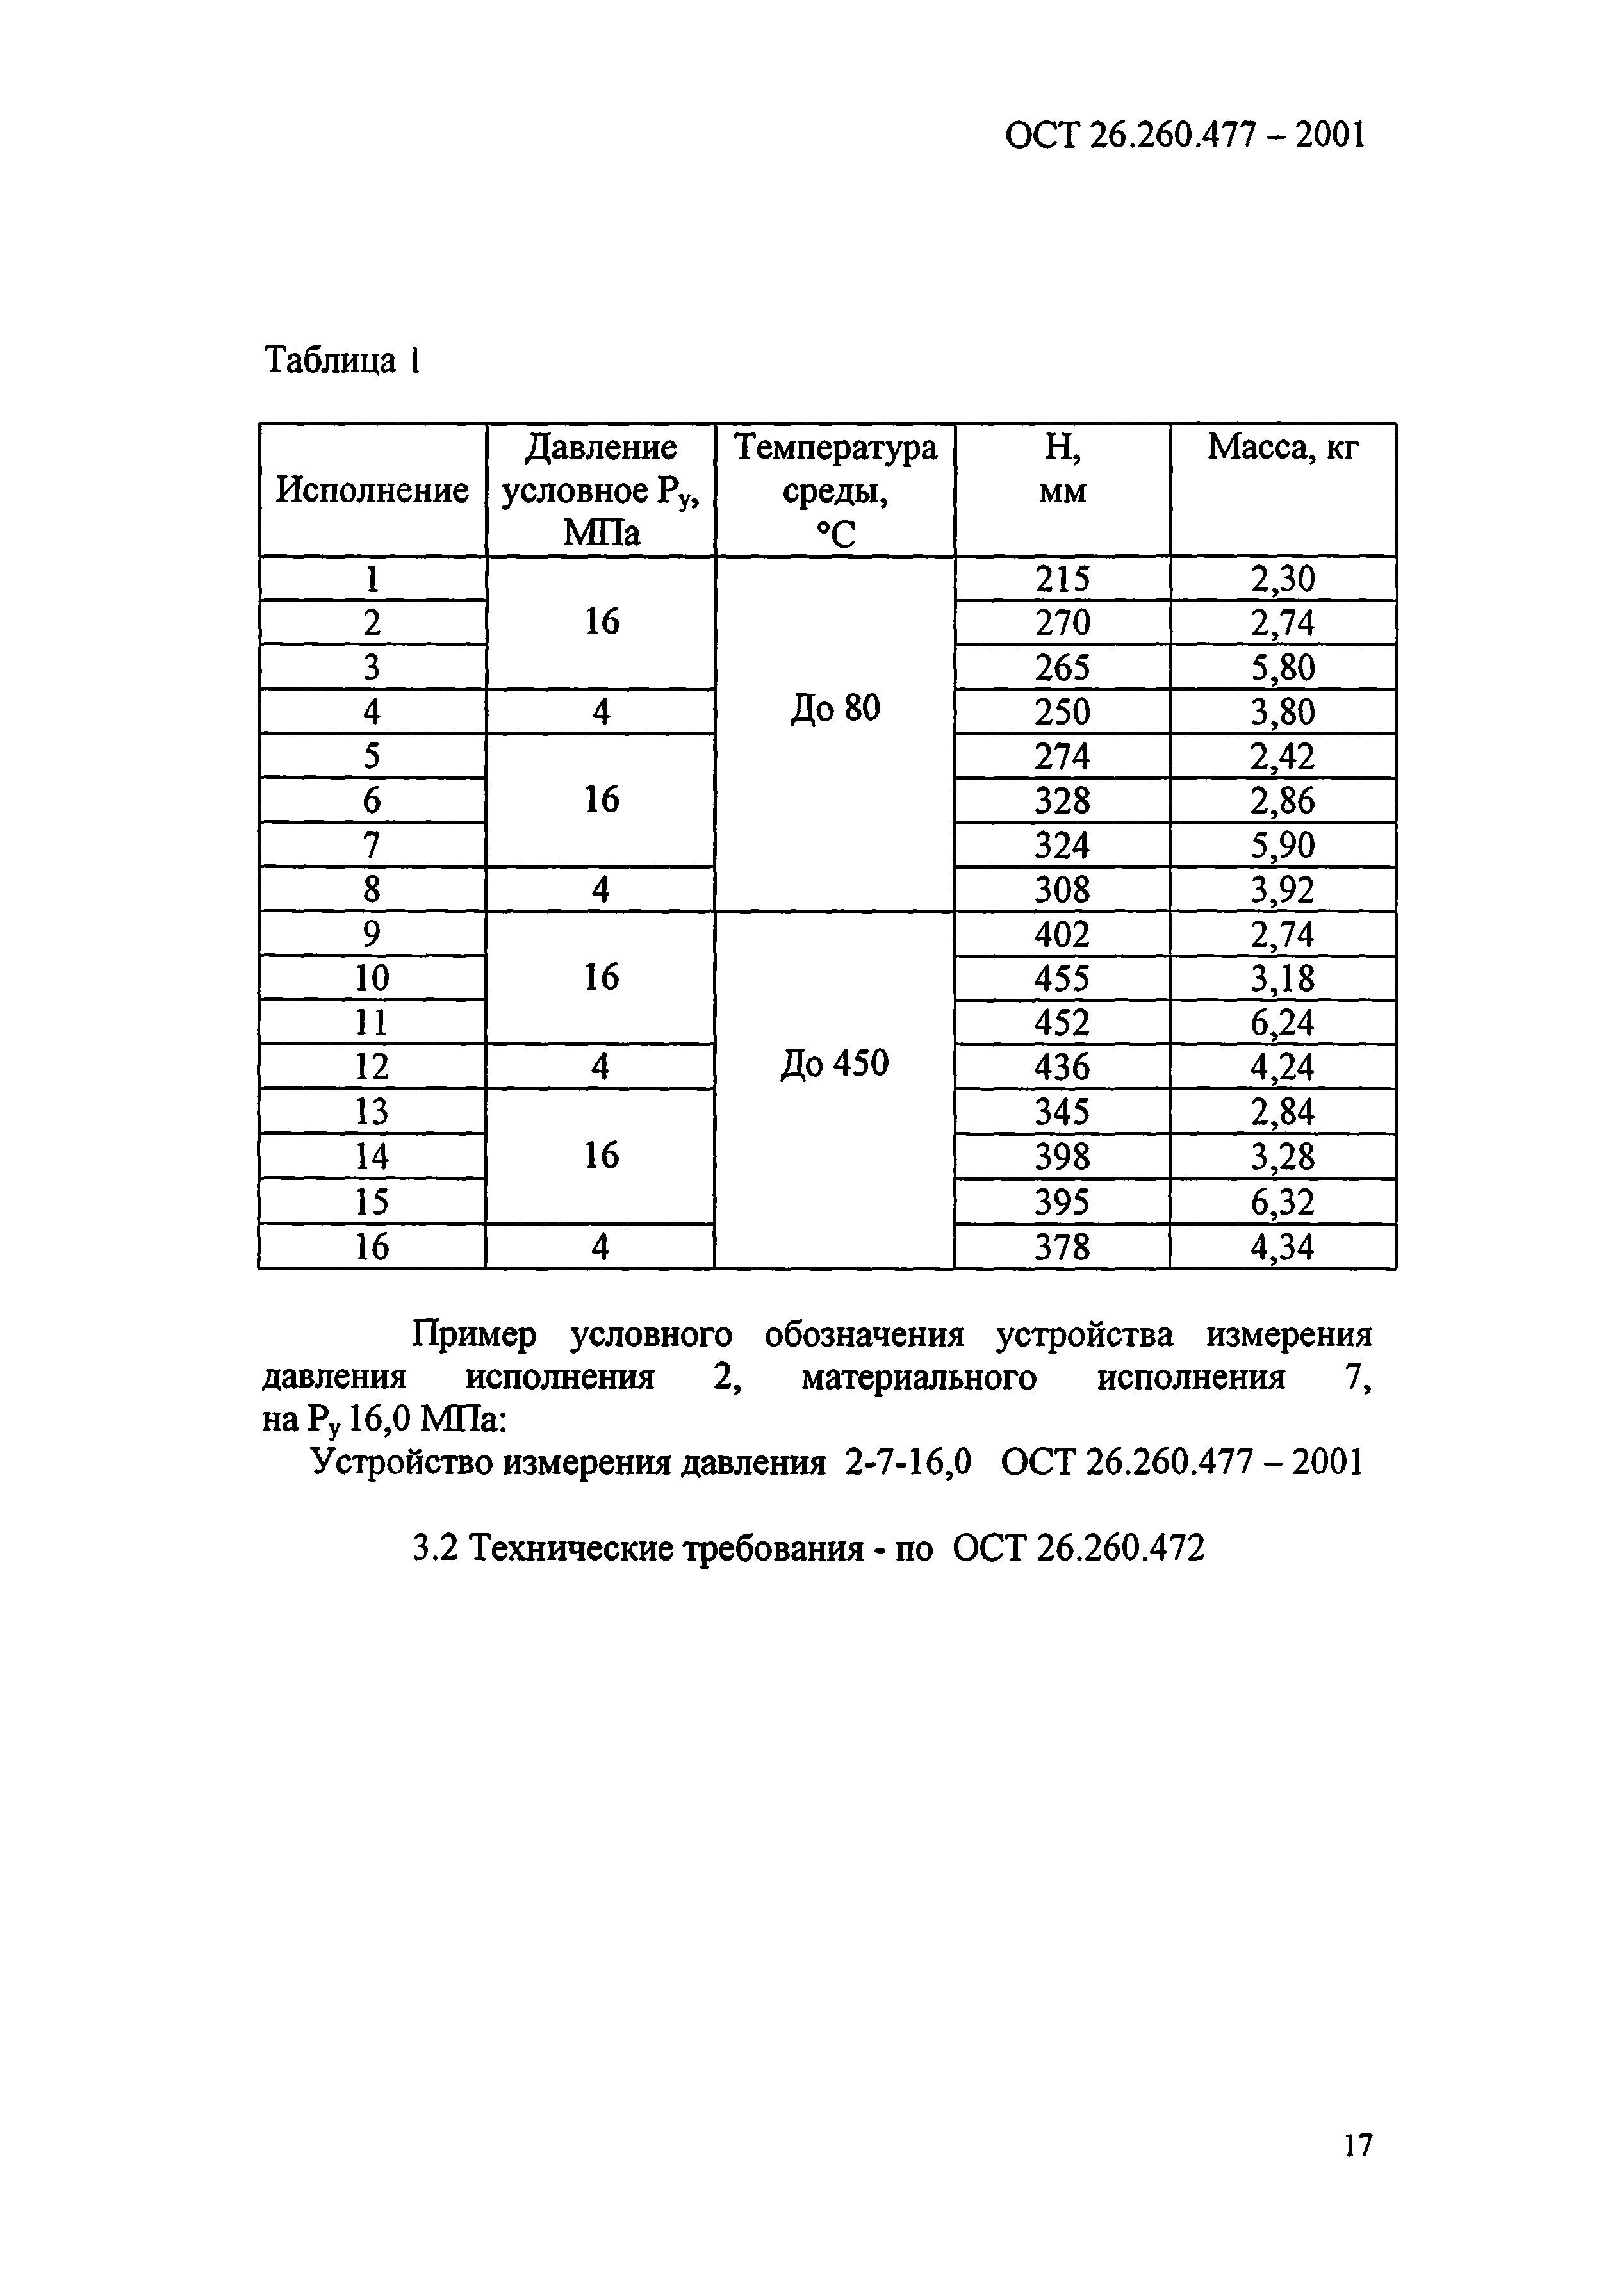 ОСТ 26.260.477-2001